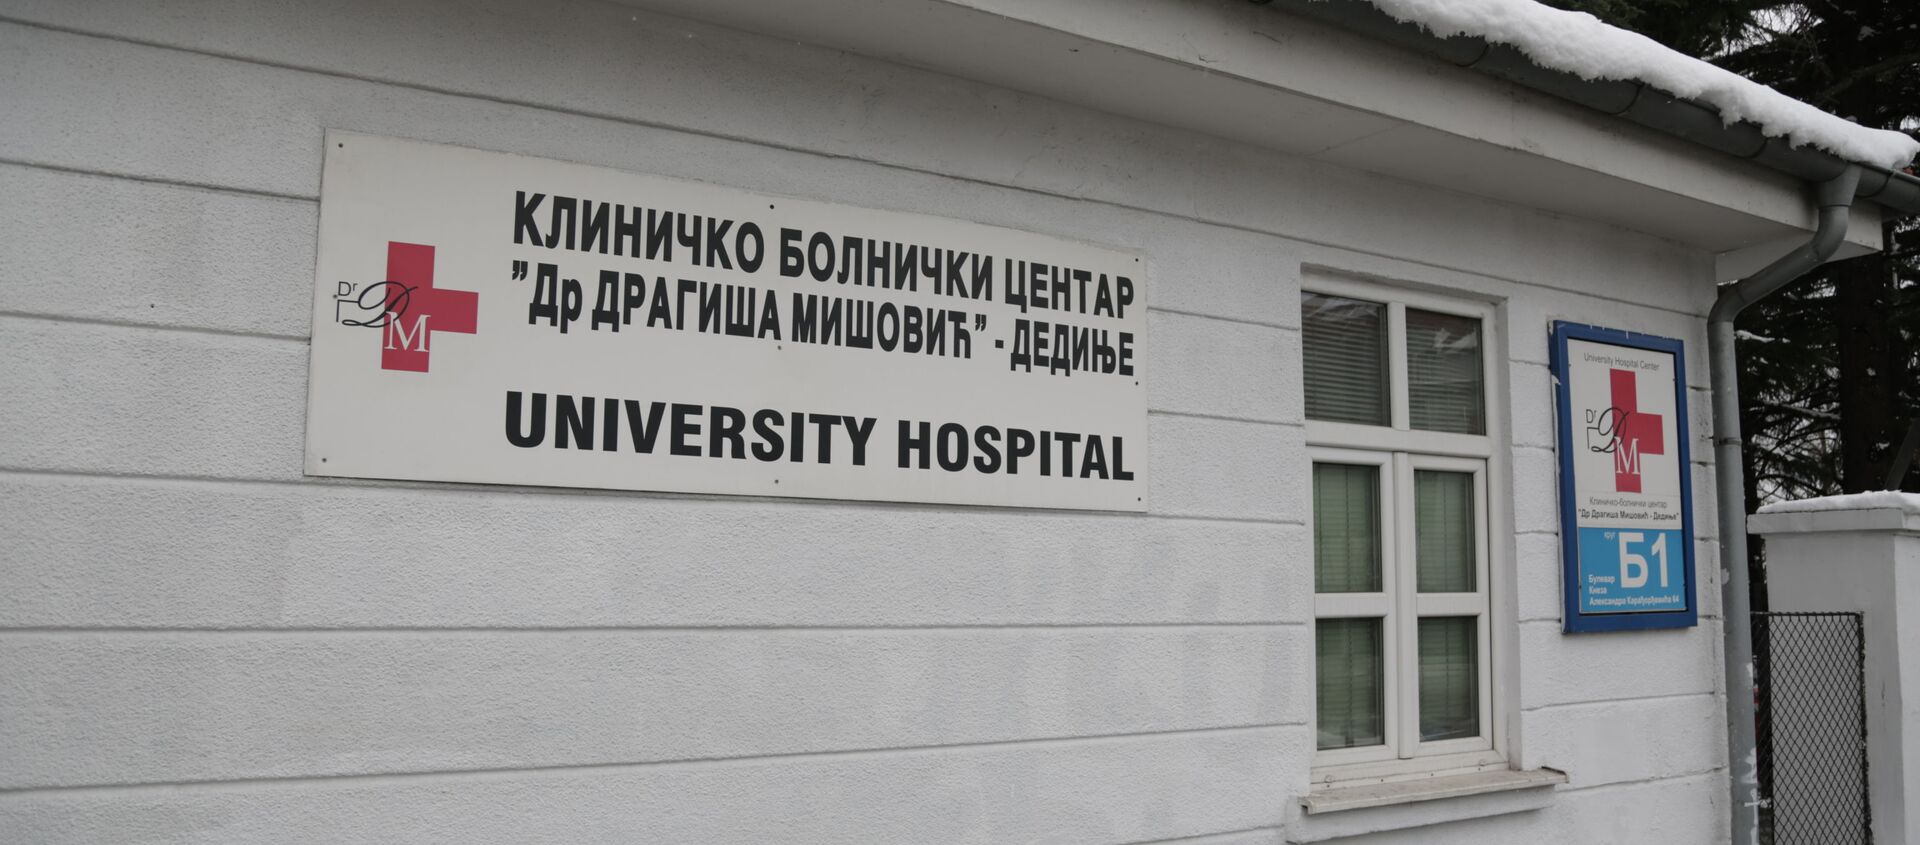 Kliničko-bolnički centar dr Dragiša Mišović - Sputnik Srbija, 1920, 02.03.2021